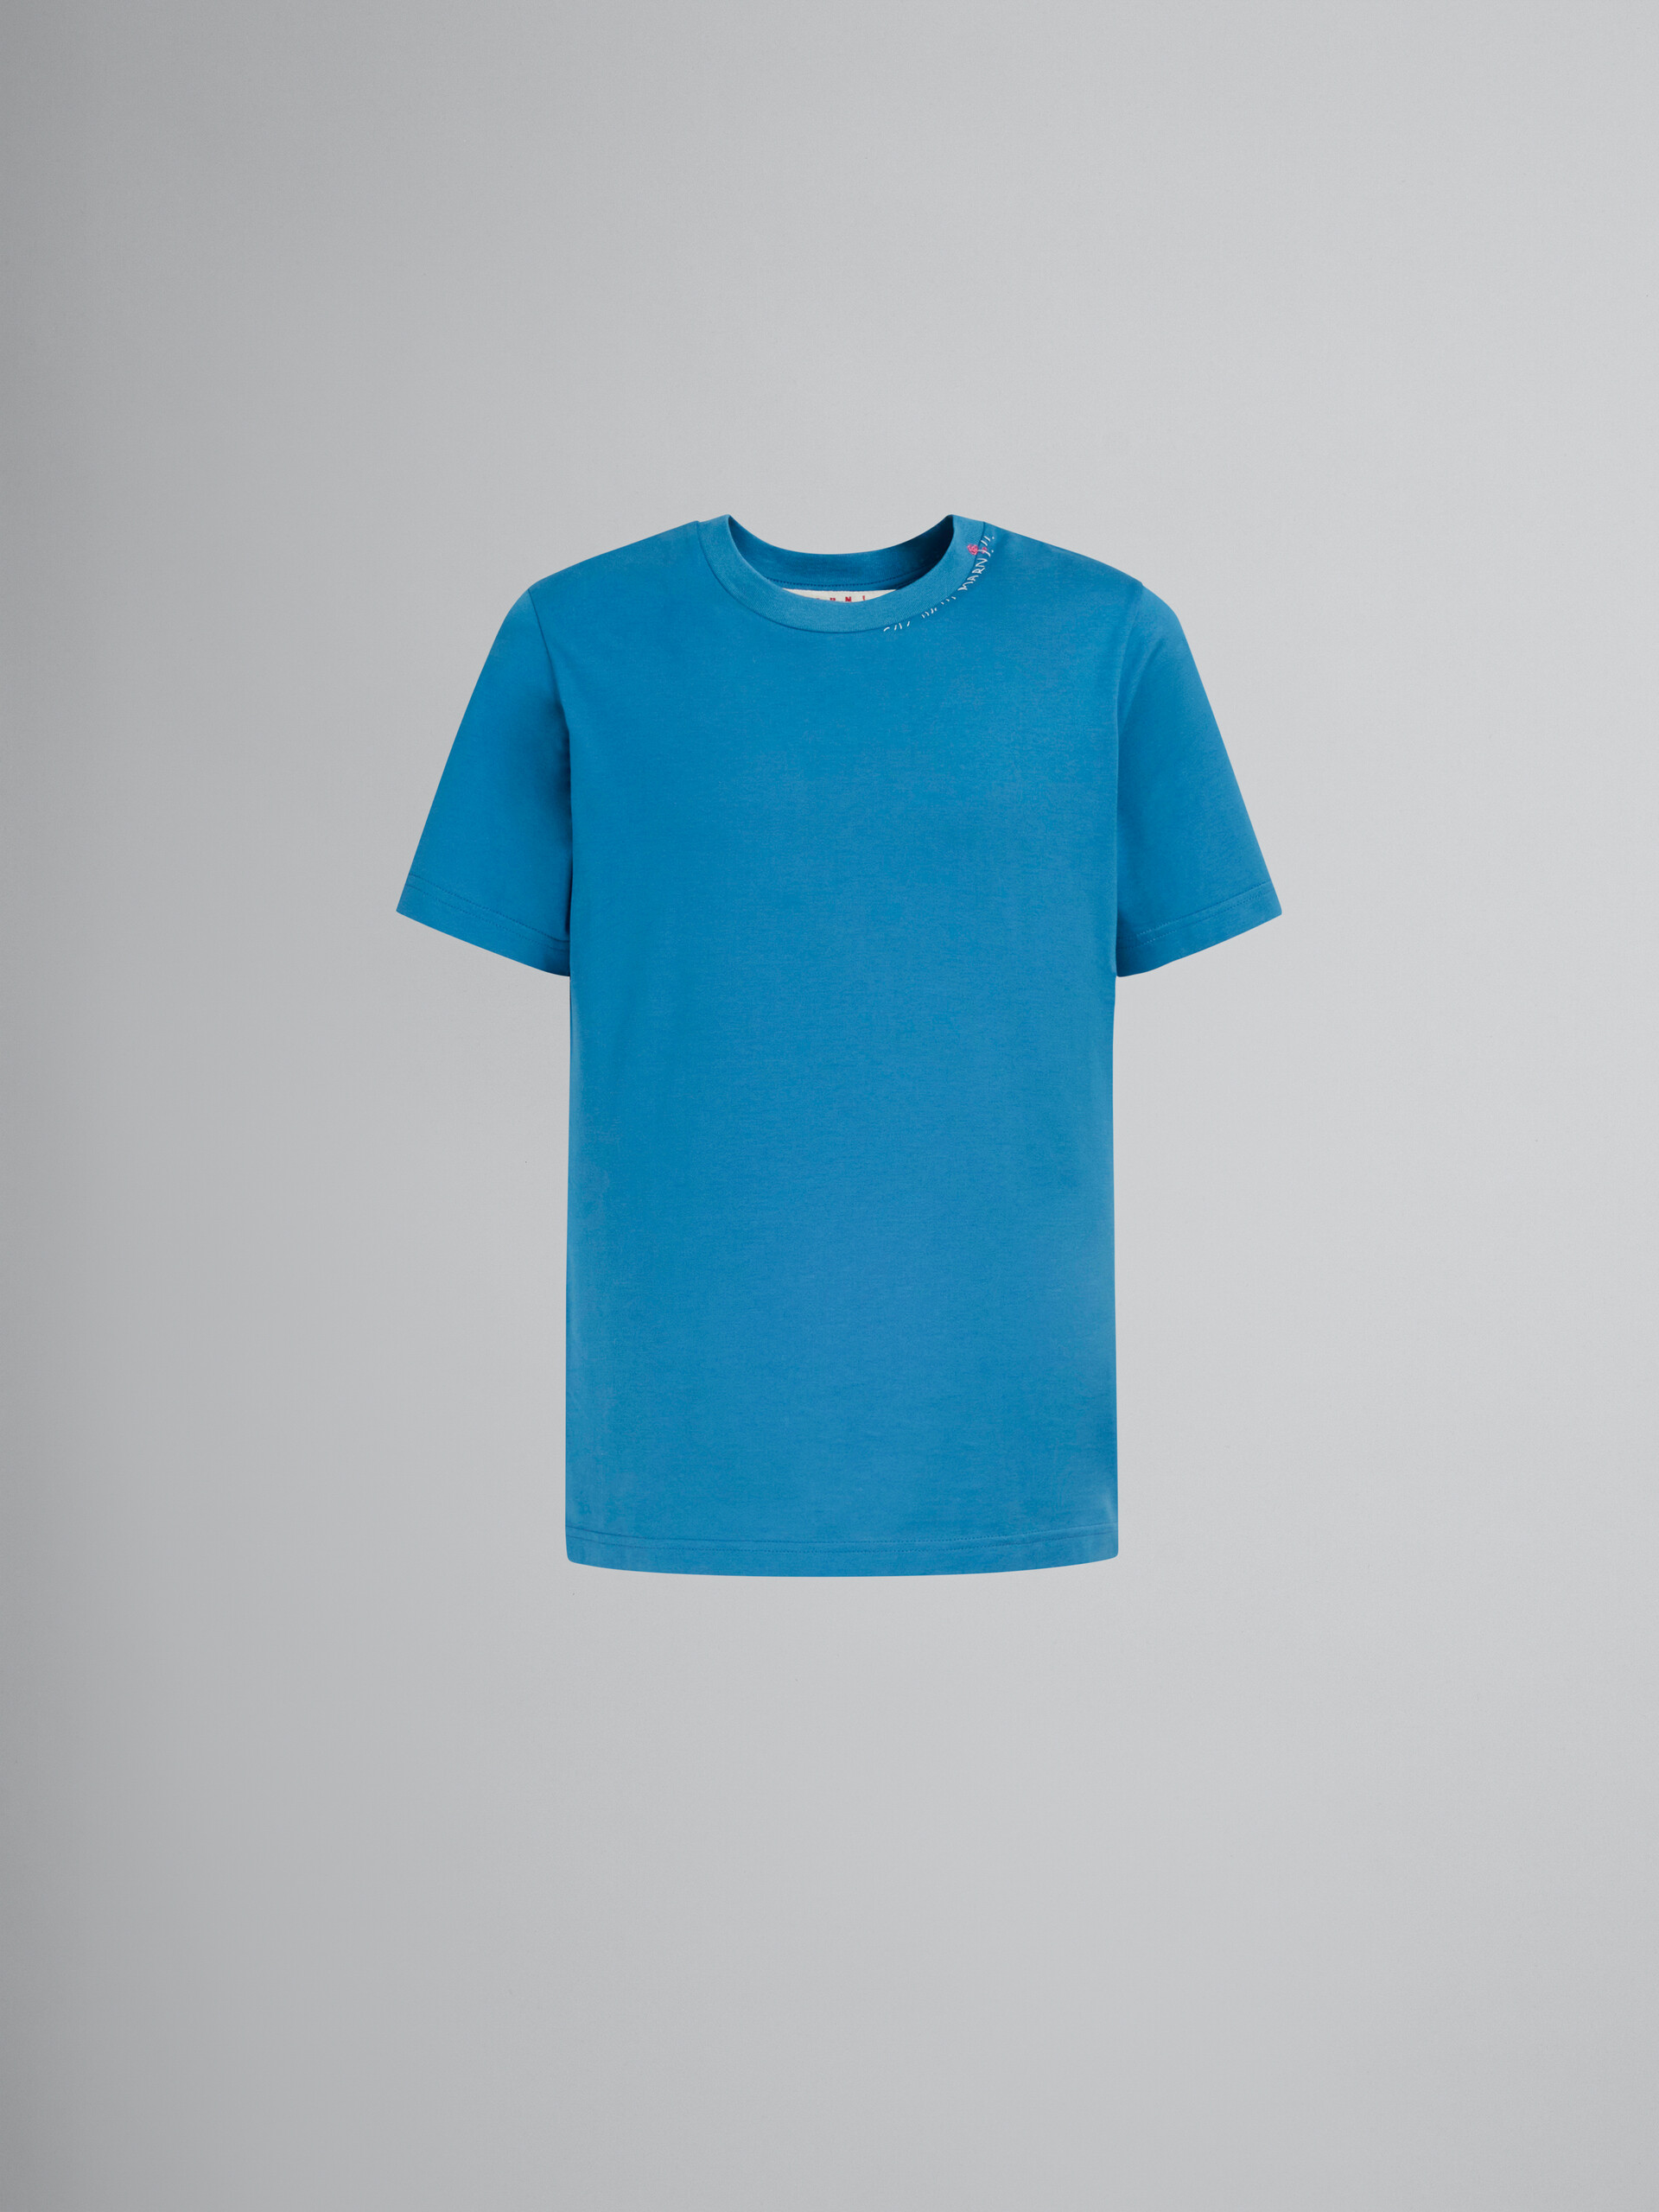 ブルー バック フラワープリント コットン製Tシャツ - Tシャツ - Image 1